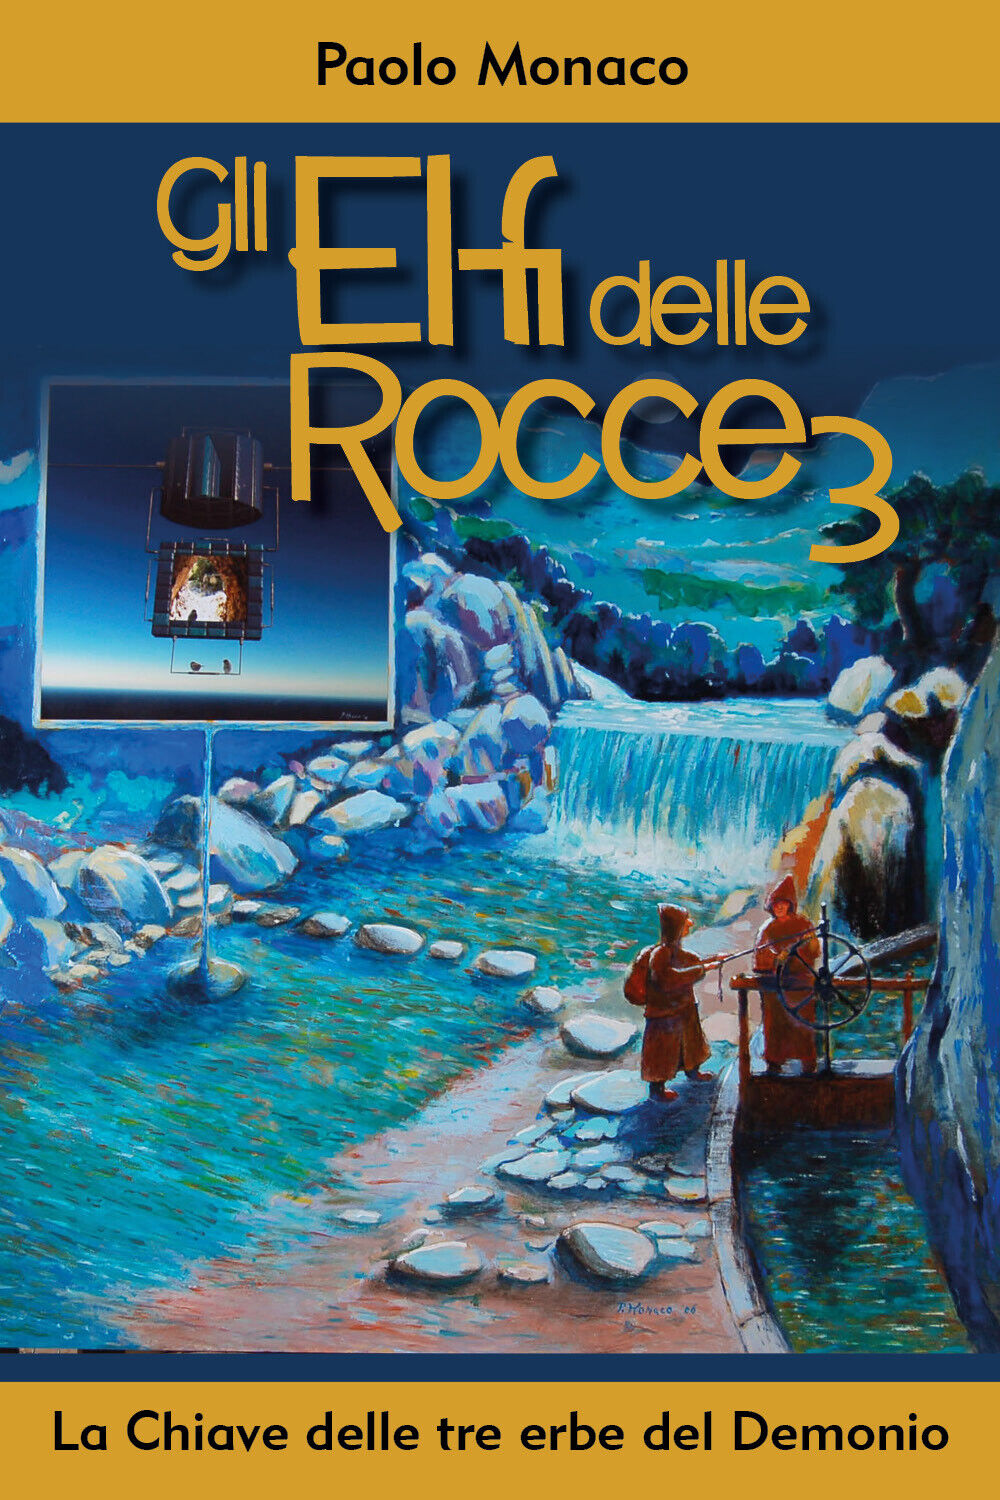 Gli Elfi delle Rocce 3, La Chiave delle tre erbe del Demonio di Paolo Monaco,  2